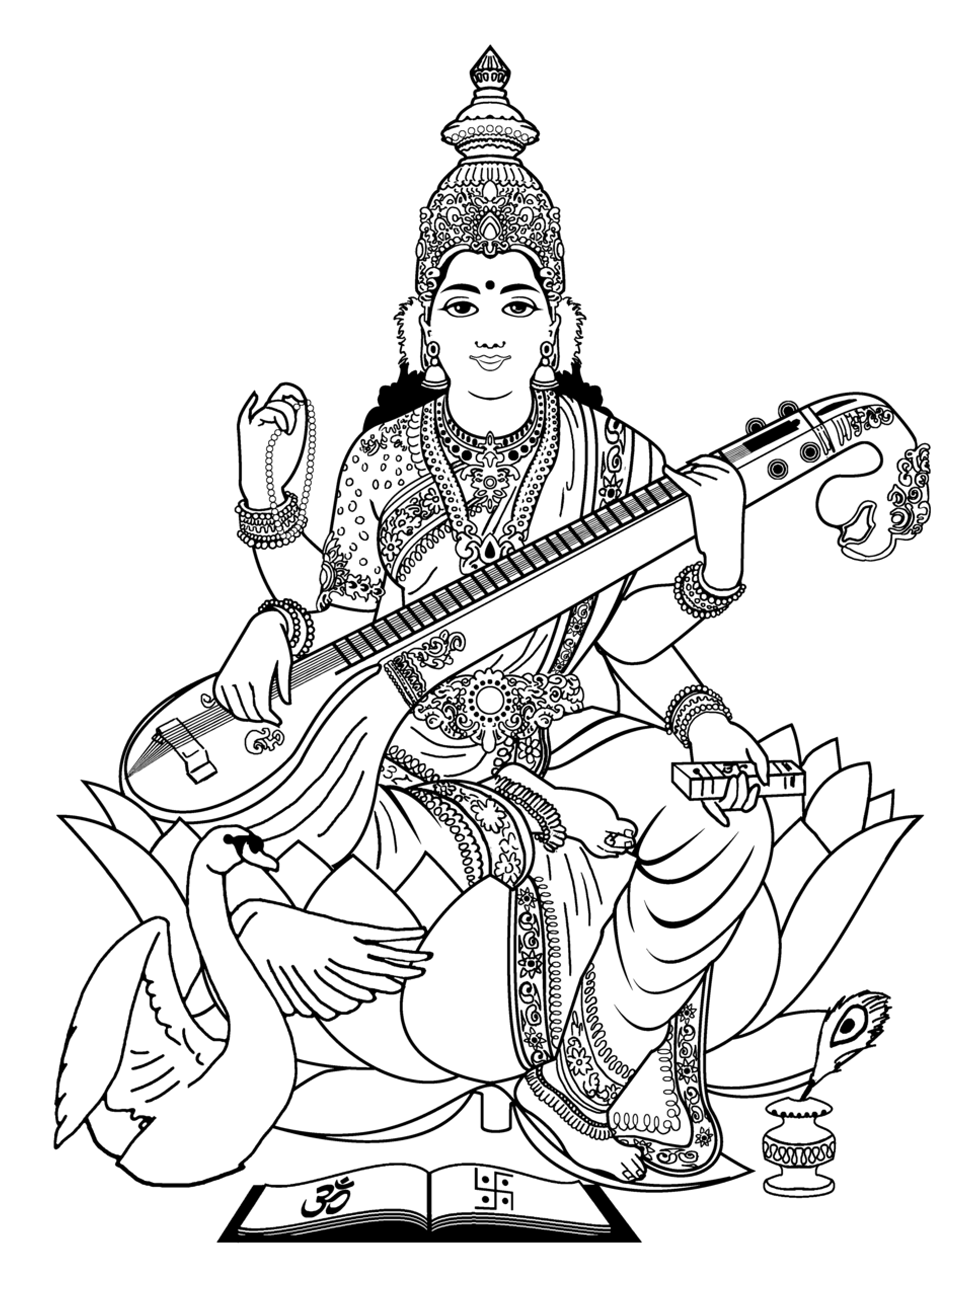 India saraswati - 3 - Image with : Guitar, Music, Woman, Saraswati